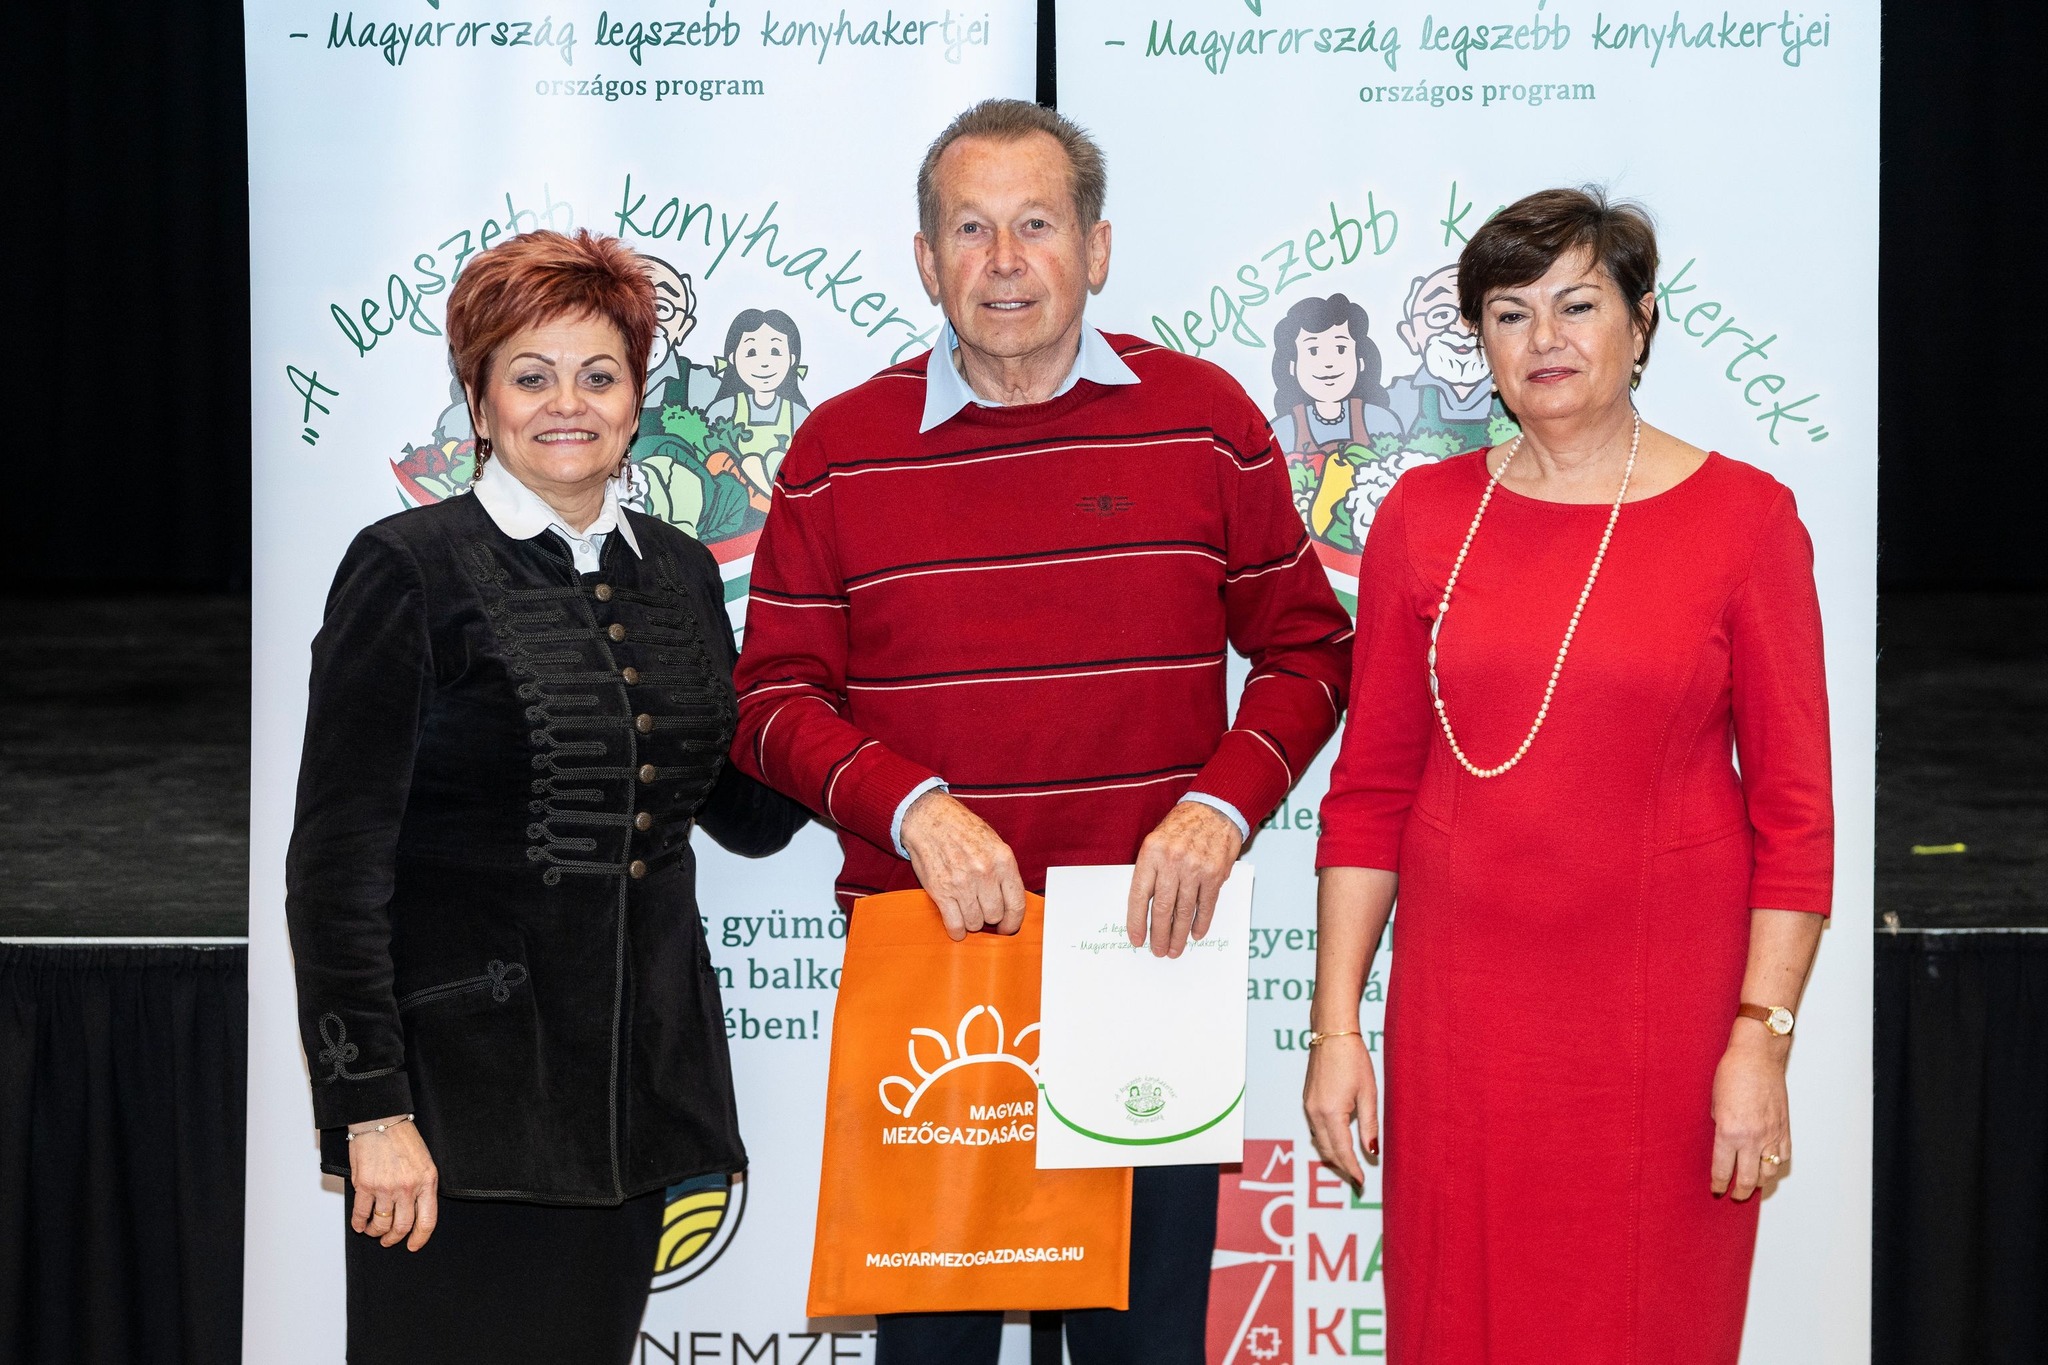 Szecskó Istvánt is ünnepelték Magyarország legszebb konyhakertjei gáláján